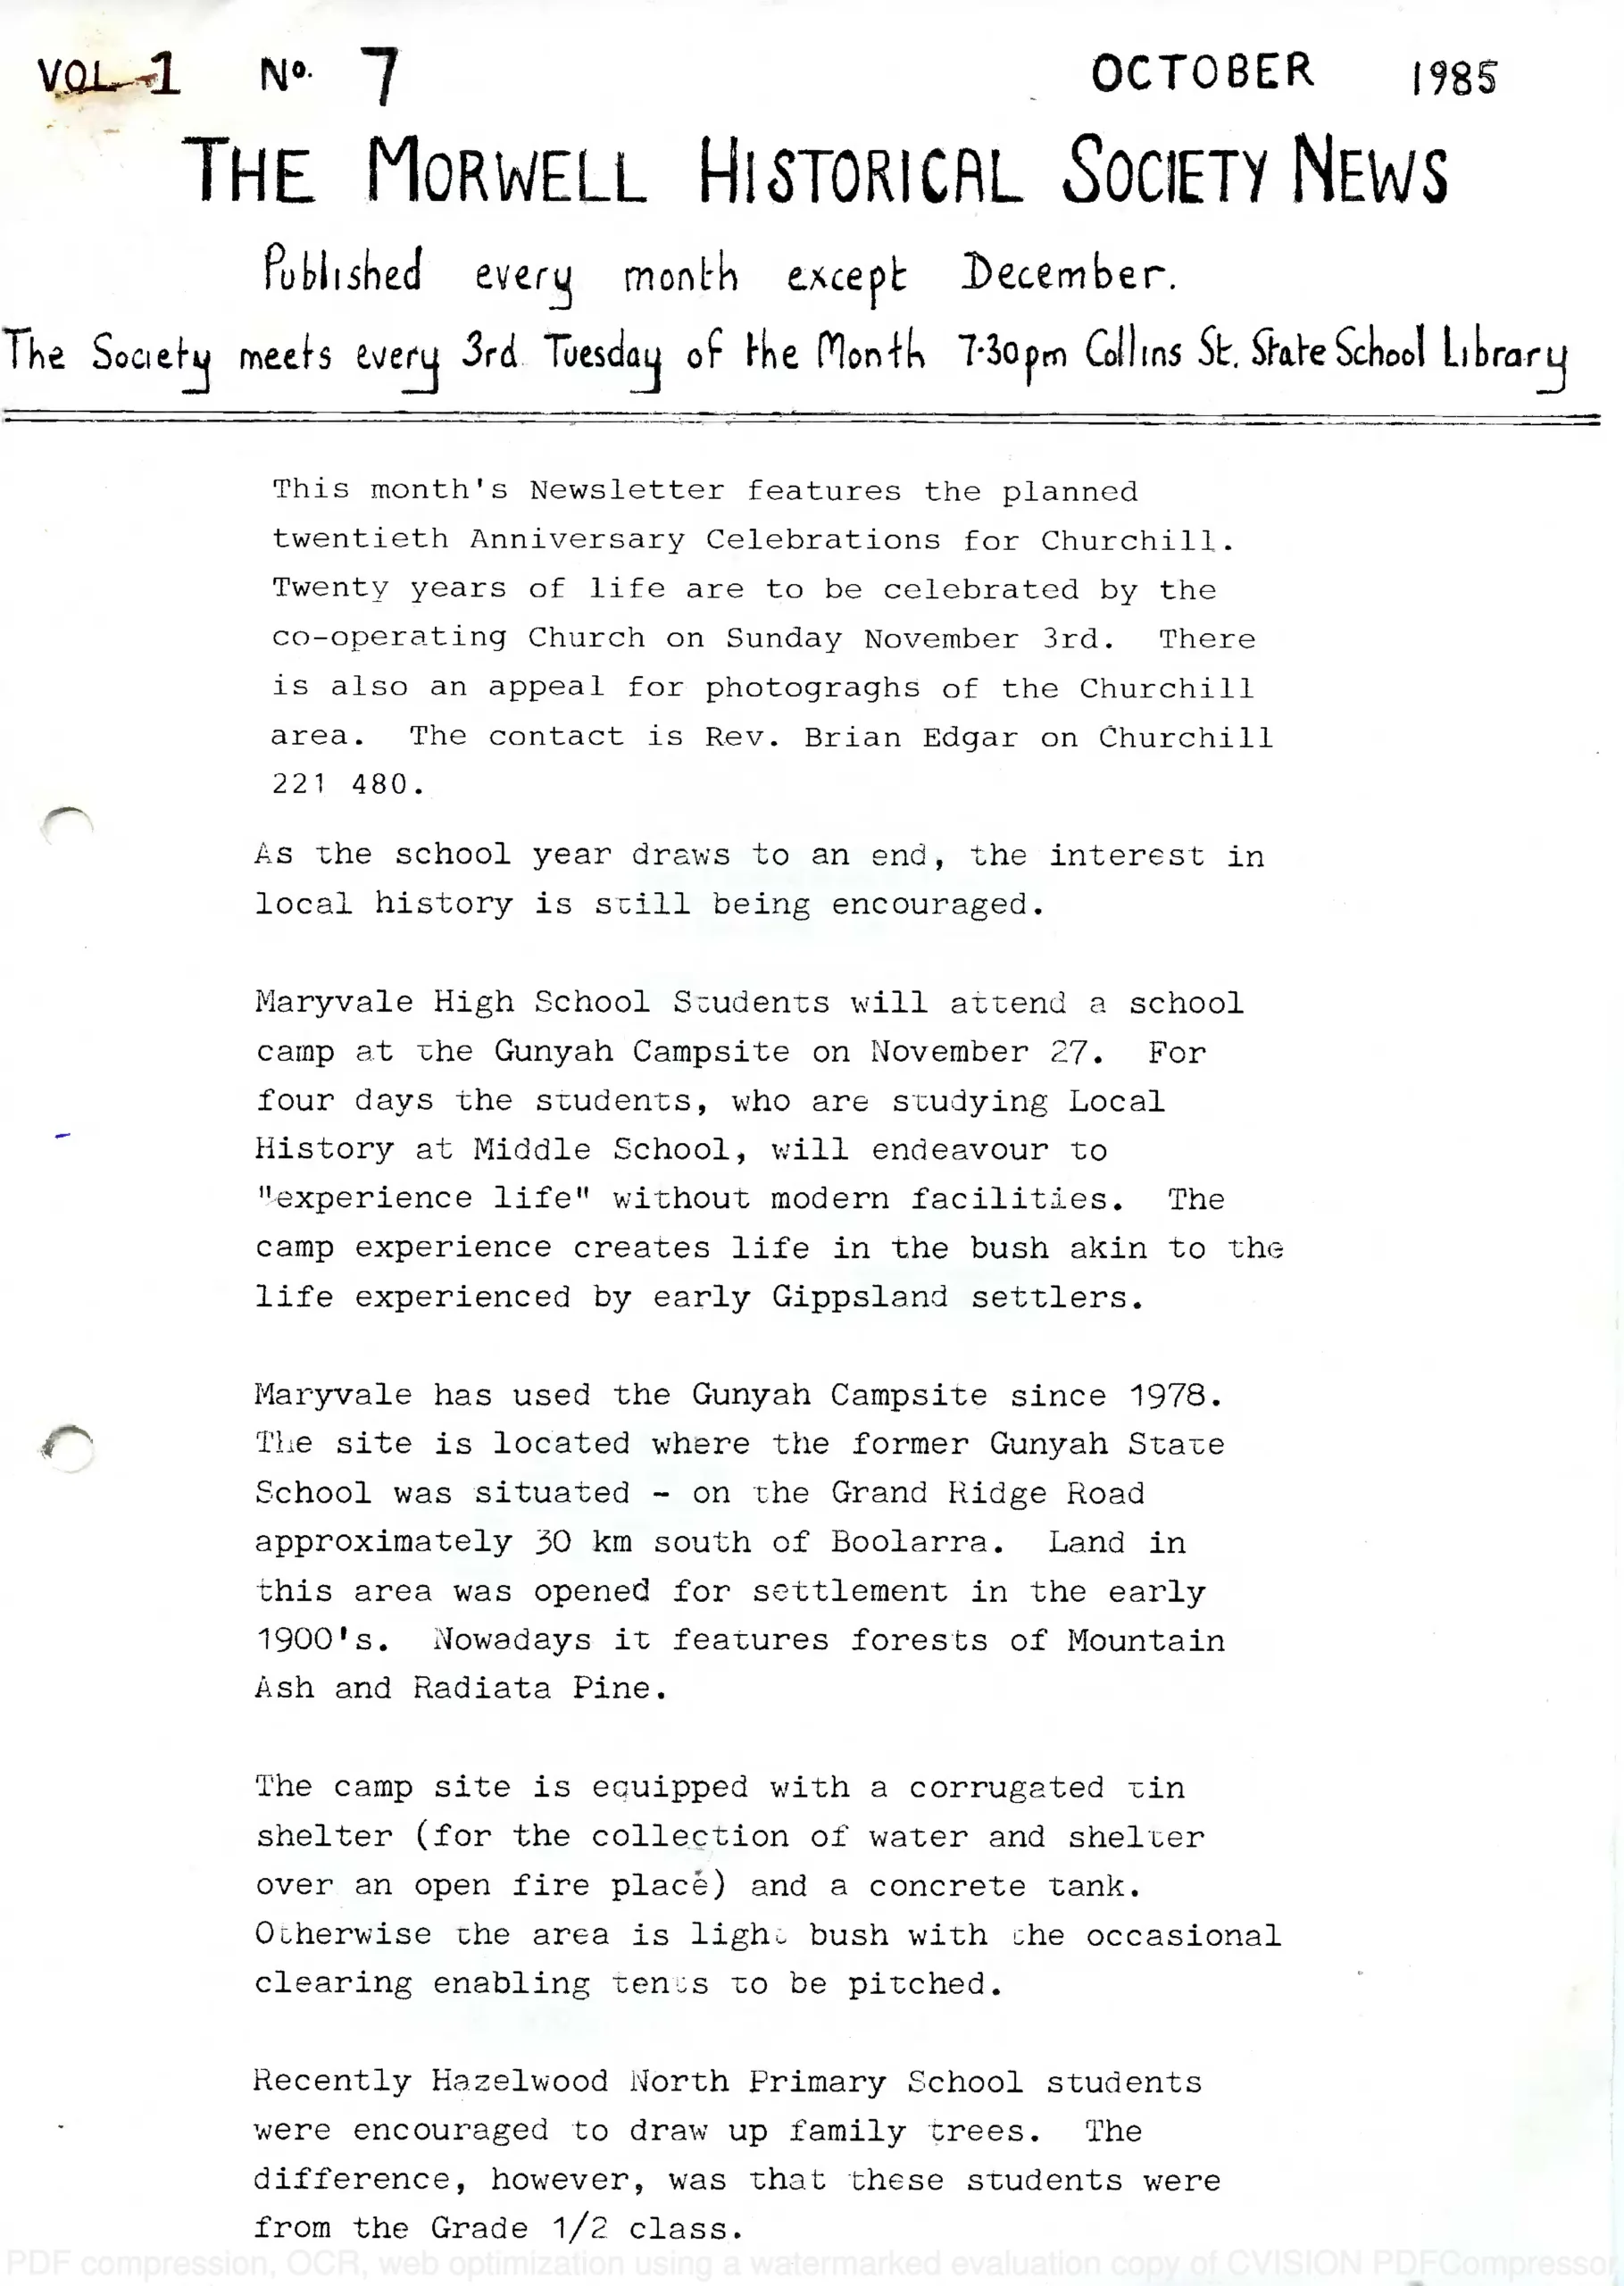 Newsletter October 1985